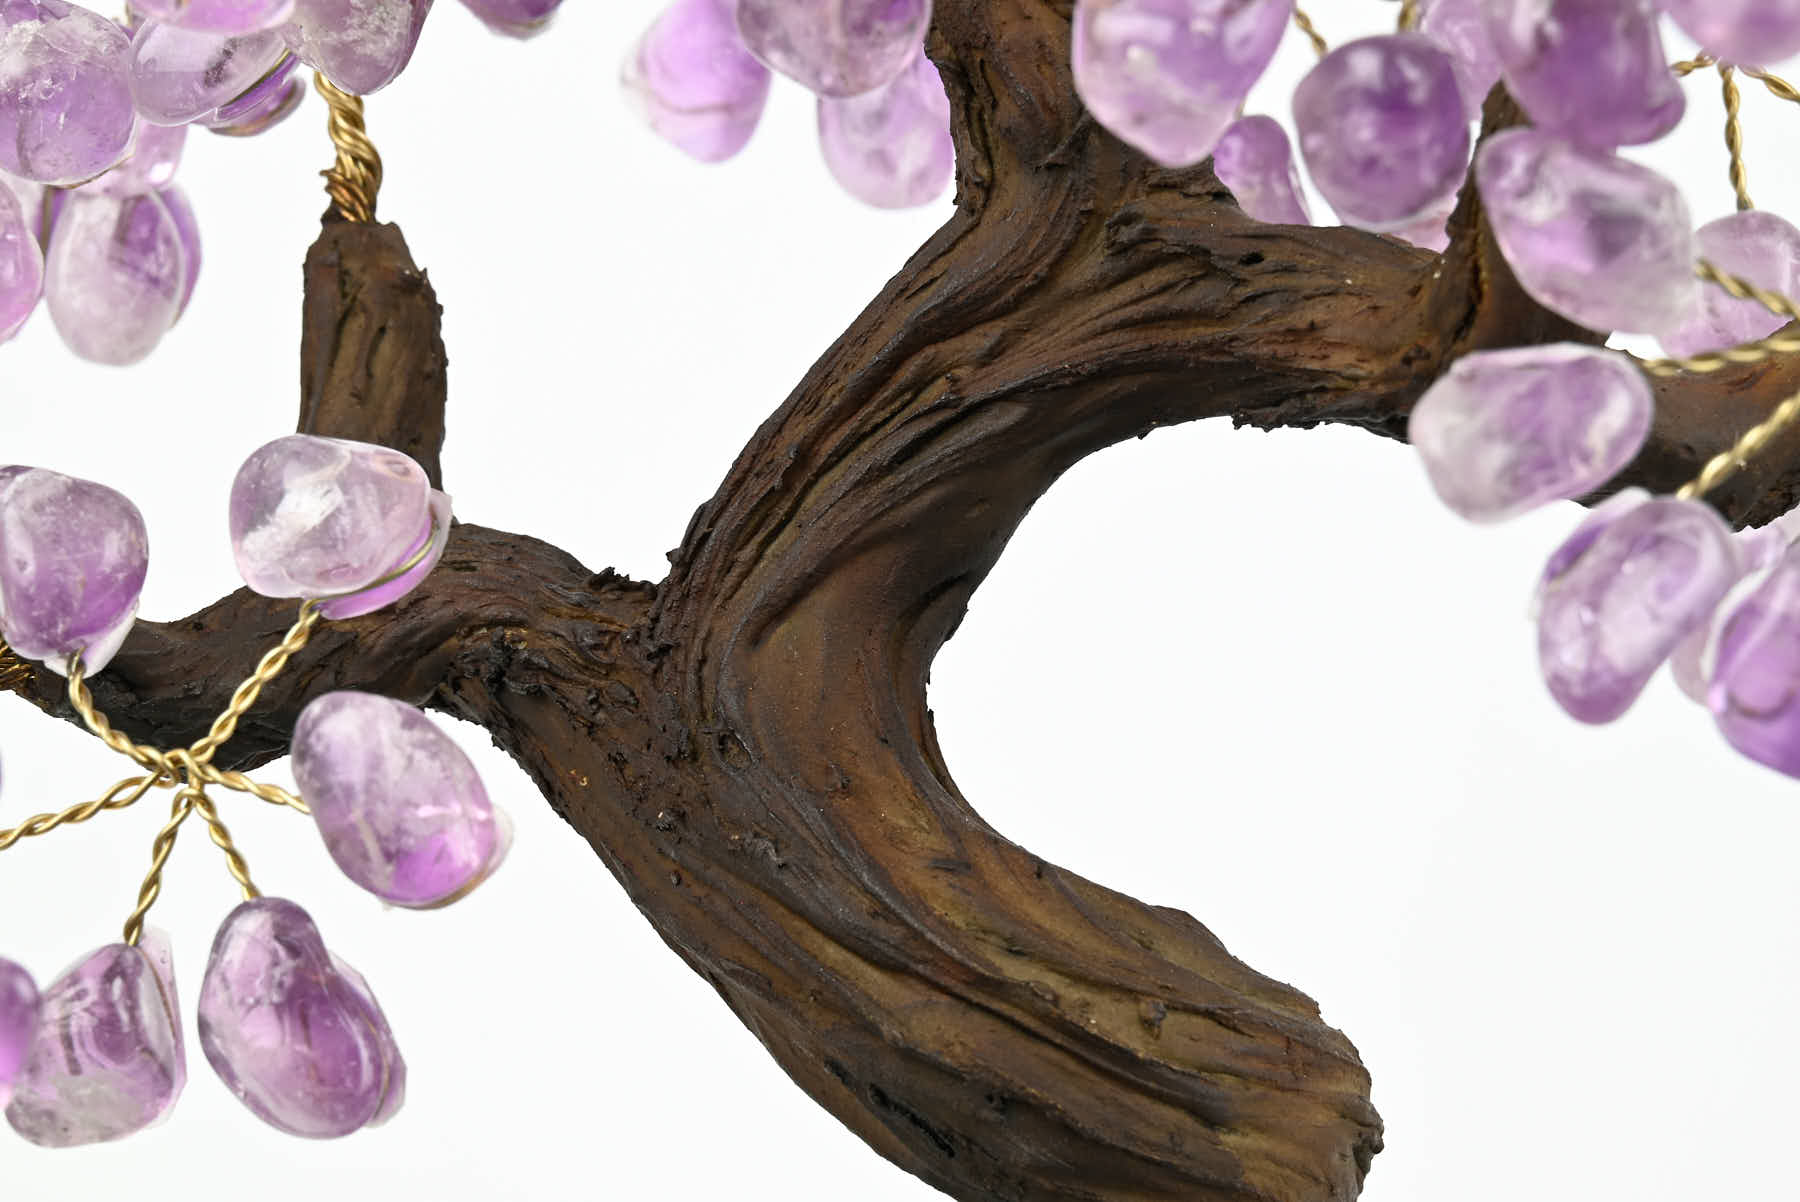 Handmade 37cm Tall Gemstone Tree with Amethyst base and 180 Amethyst gems - #TRAMET-36003